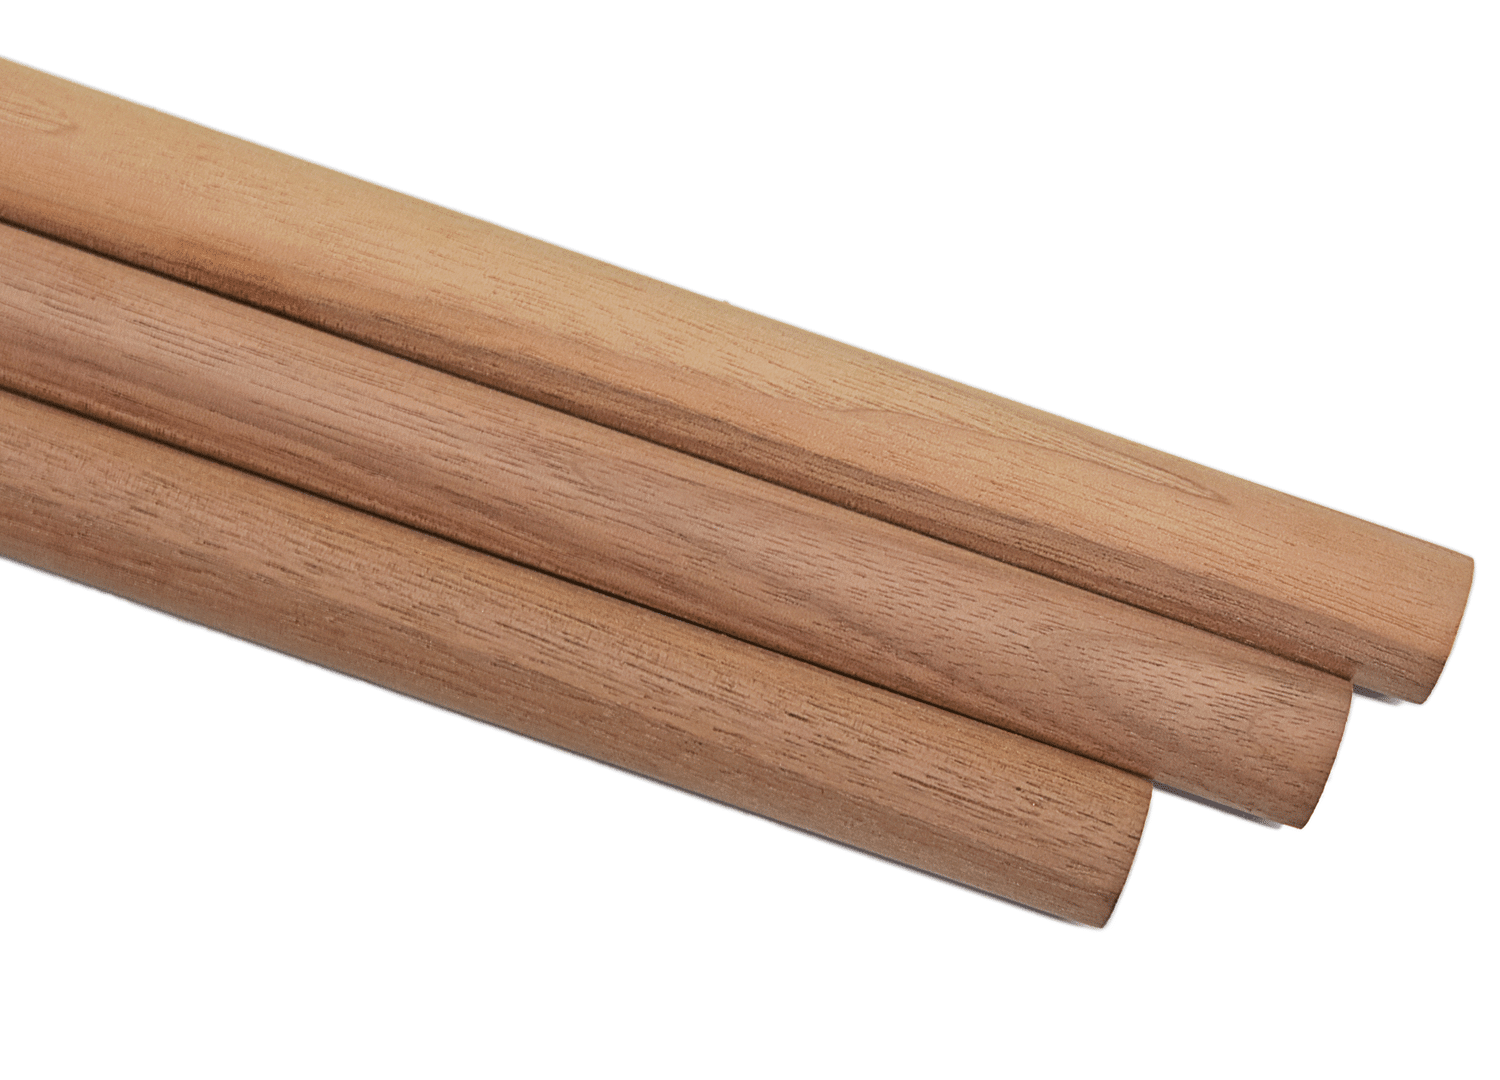 3/8 x 36 Wood Dowel